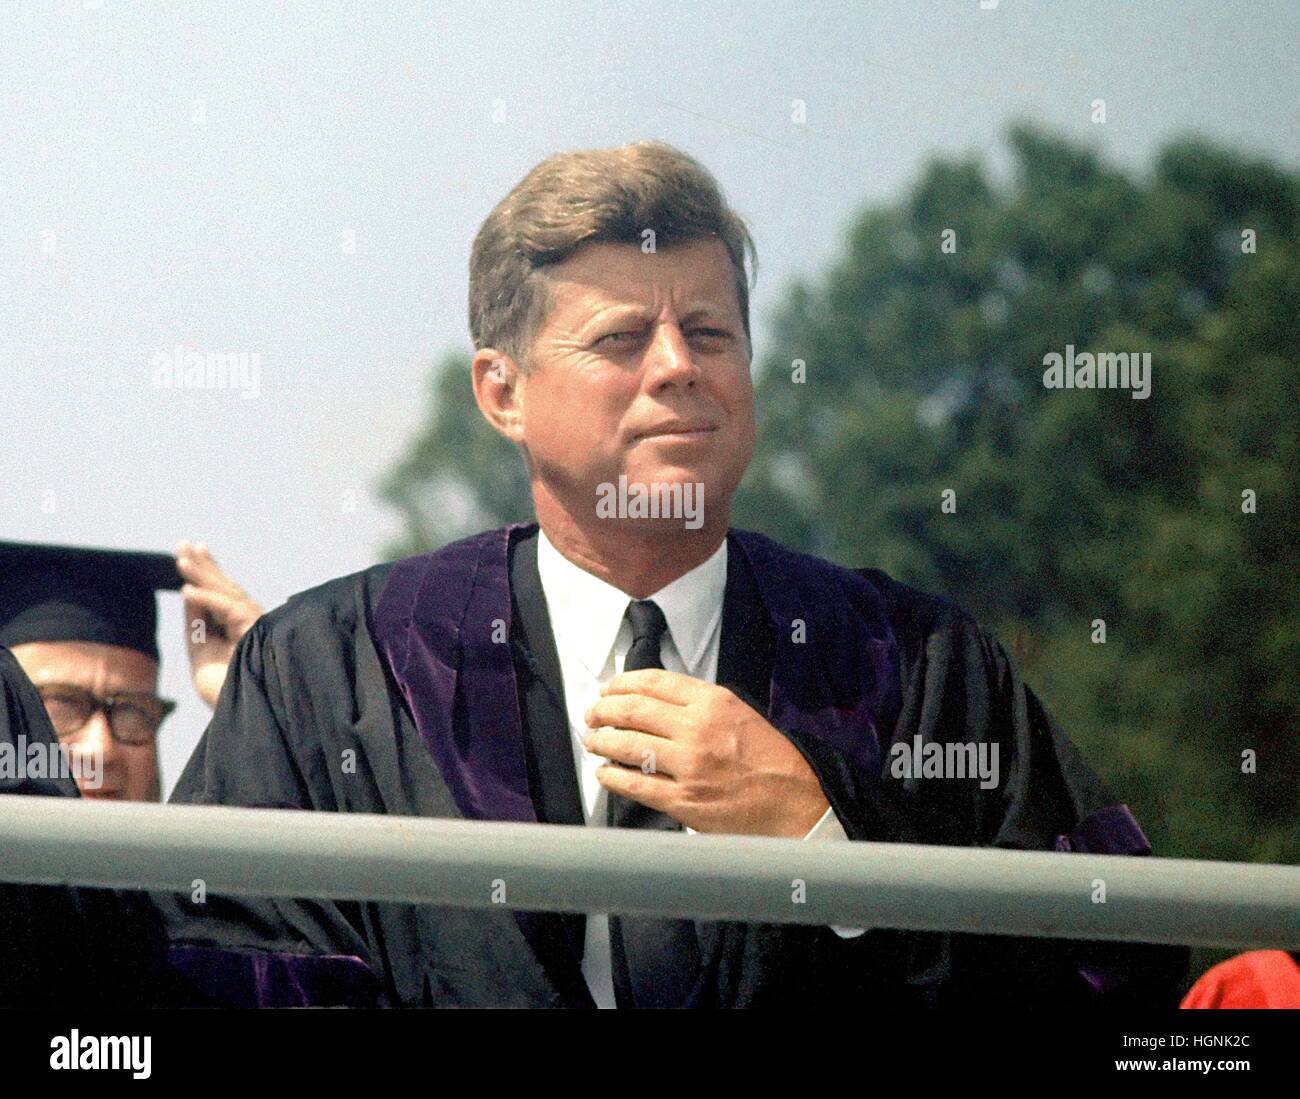 Le président des États-Unis John F. Kennedy prend la parole à l'ouverture de l'Université américaine à Washington, D.C. le 10 juin 1963. Ce discours est connu comme Kennedy 'Pax Americana' discours, où il a présenté sa vision pour la paix dans le monde. Banque D'Images